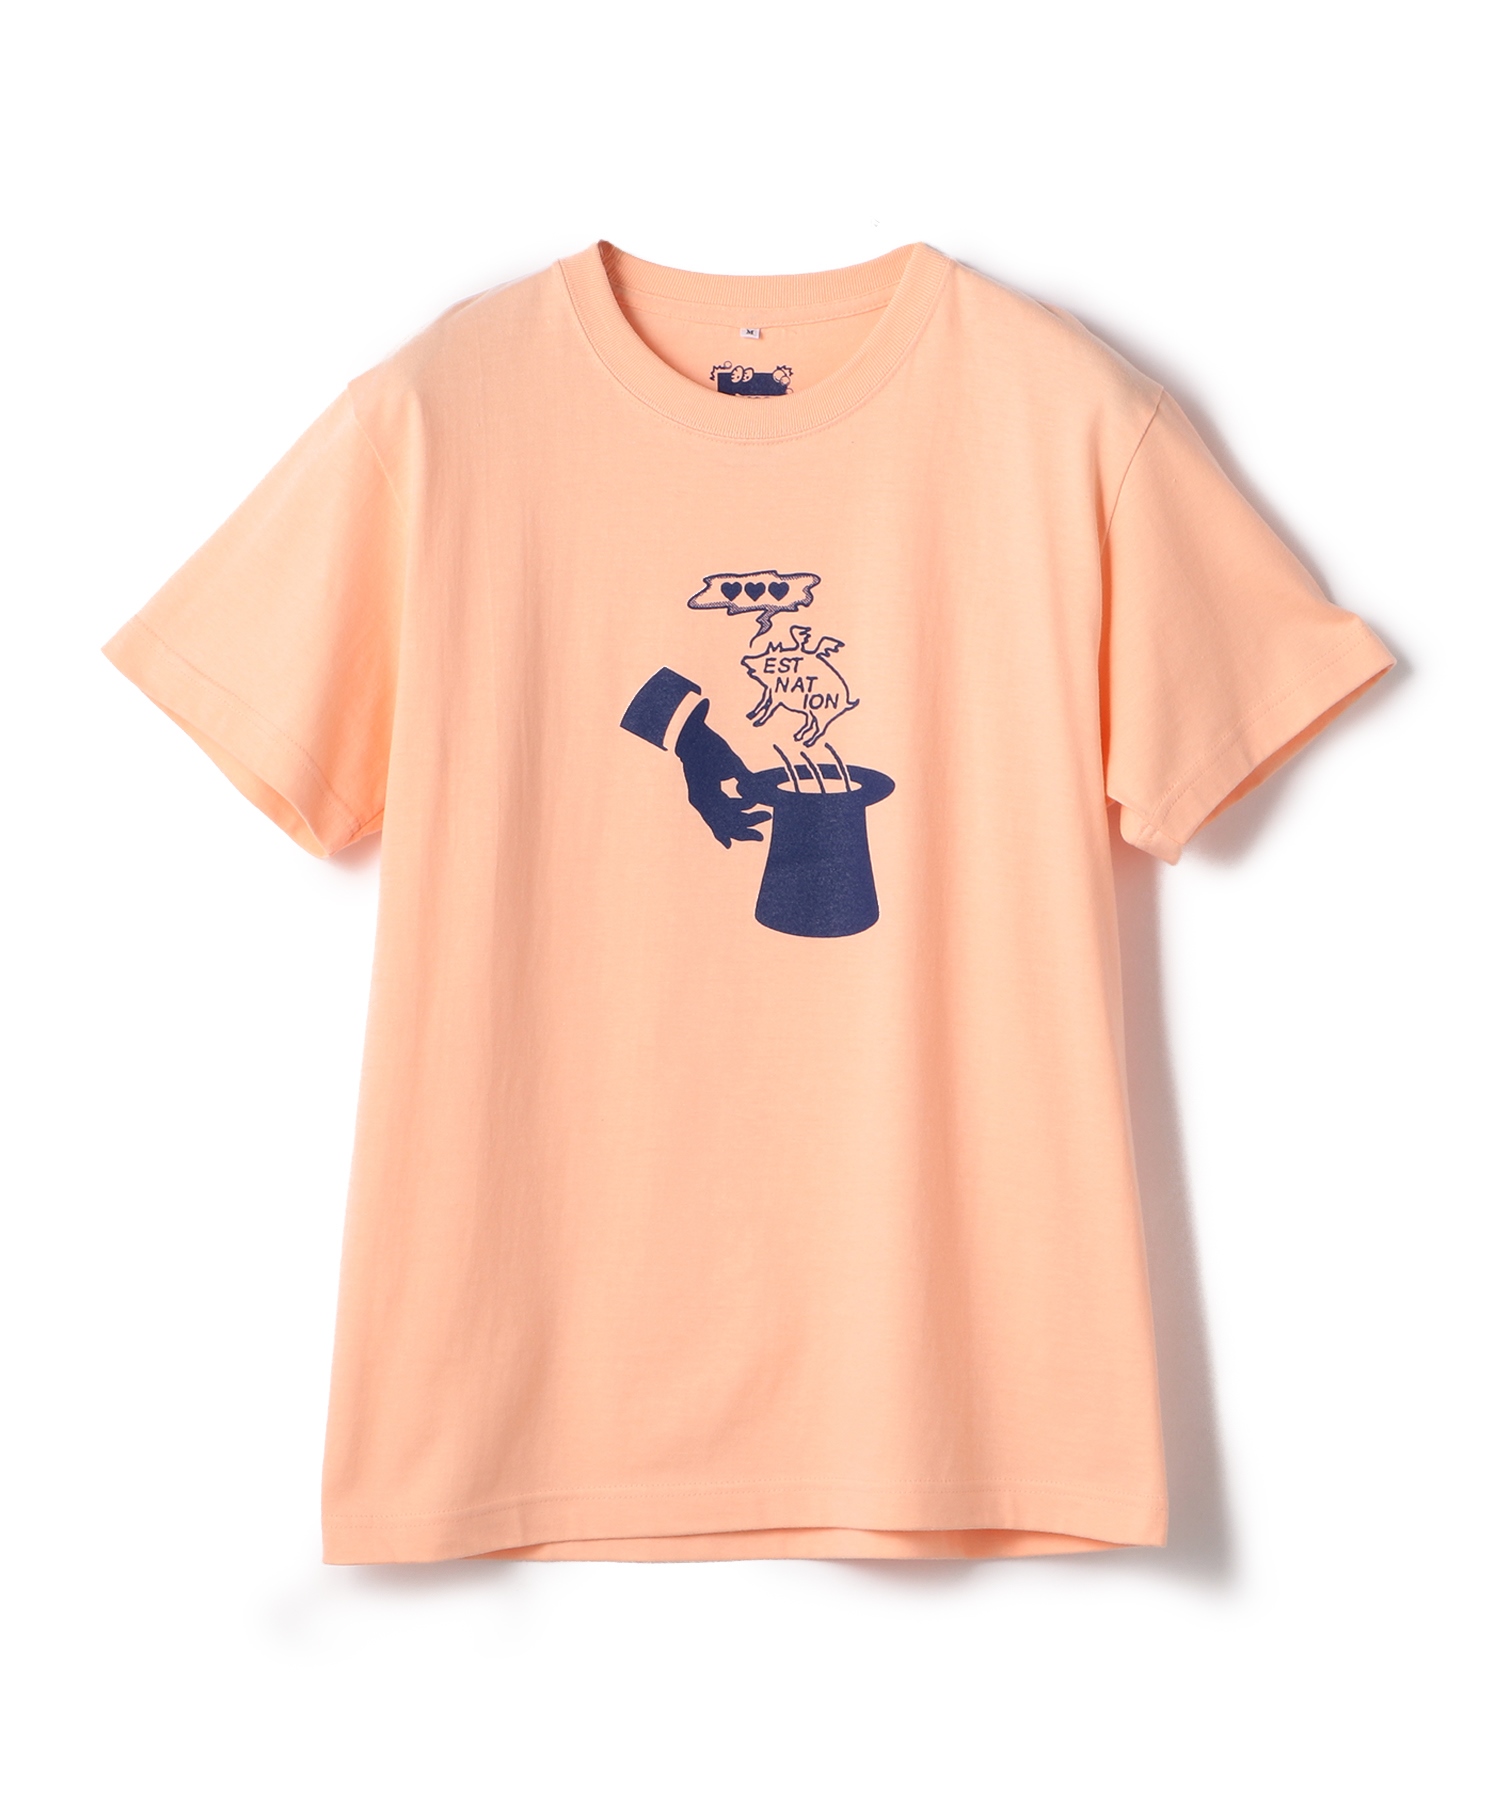 ★日本の職人技★ 超話題新作 ESTNATIONESTNATION 'souvenir PIG' Tシャツ charitycaseband.com charitycaseband.com